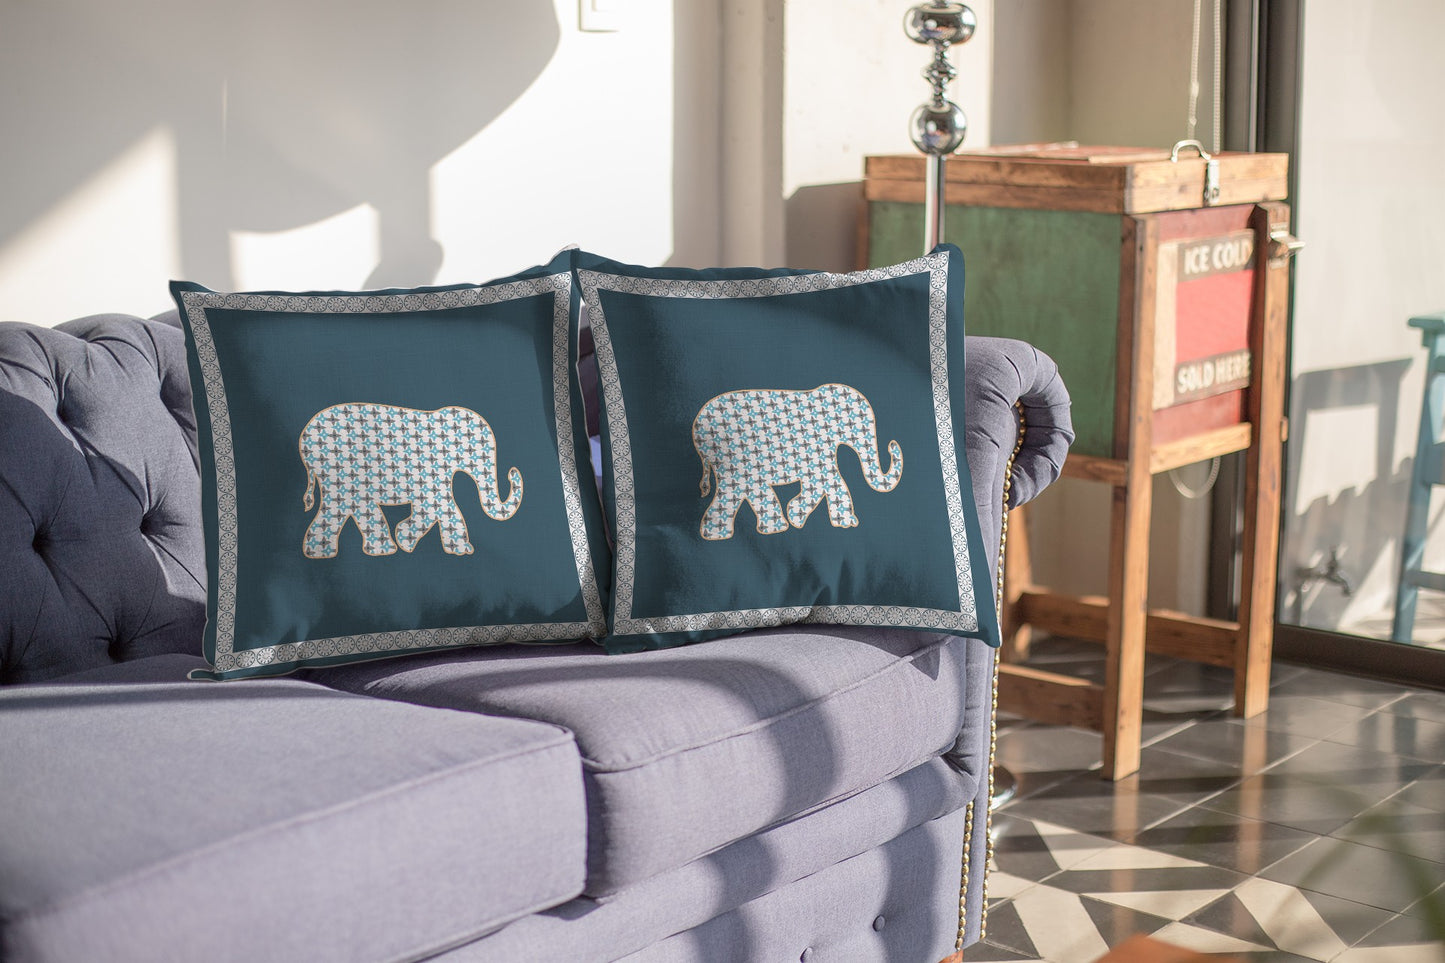 16” Spruce Blue Elephant Boho Suede Throw Pillow